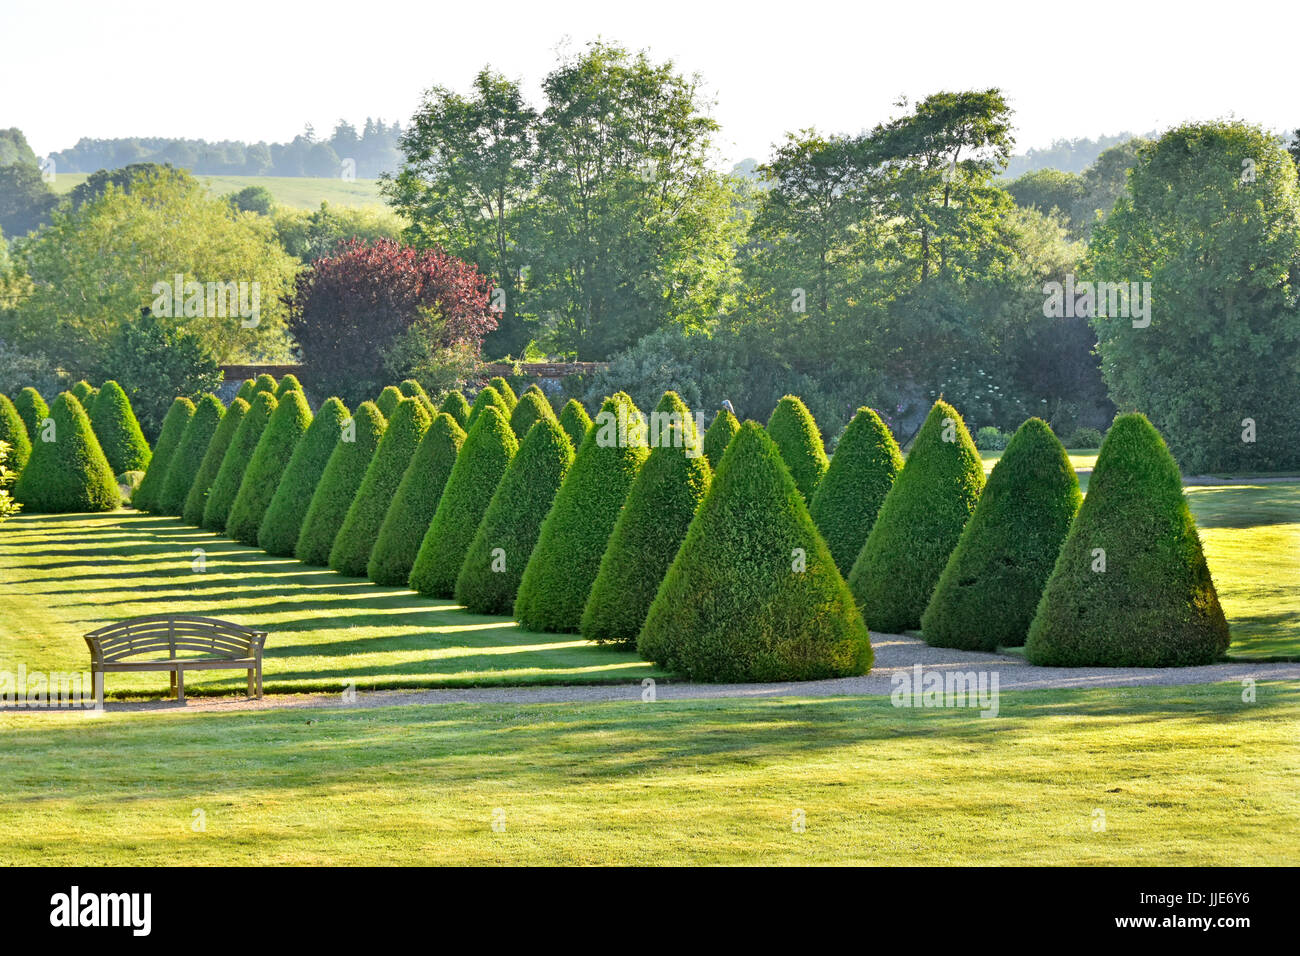 Elisabethanische Landgarten topiary in historischen Parklands & Gärten mit Bäumen jetzt Warners Hotel & Freizeitzentrum Littlecote House Wiltshire England Großbritannien Stockfoto